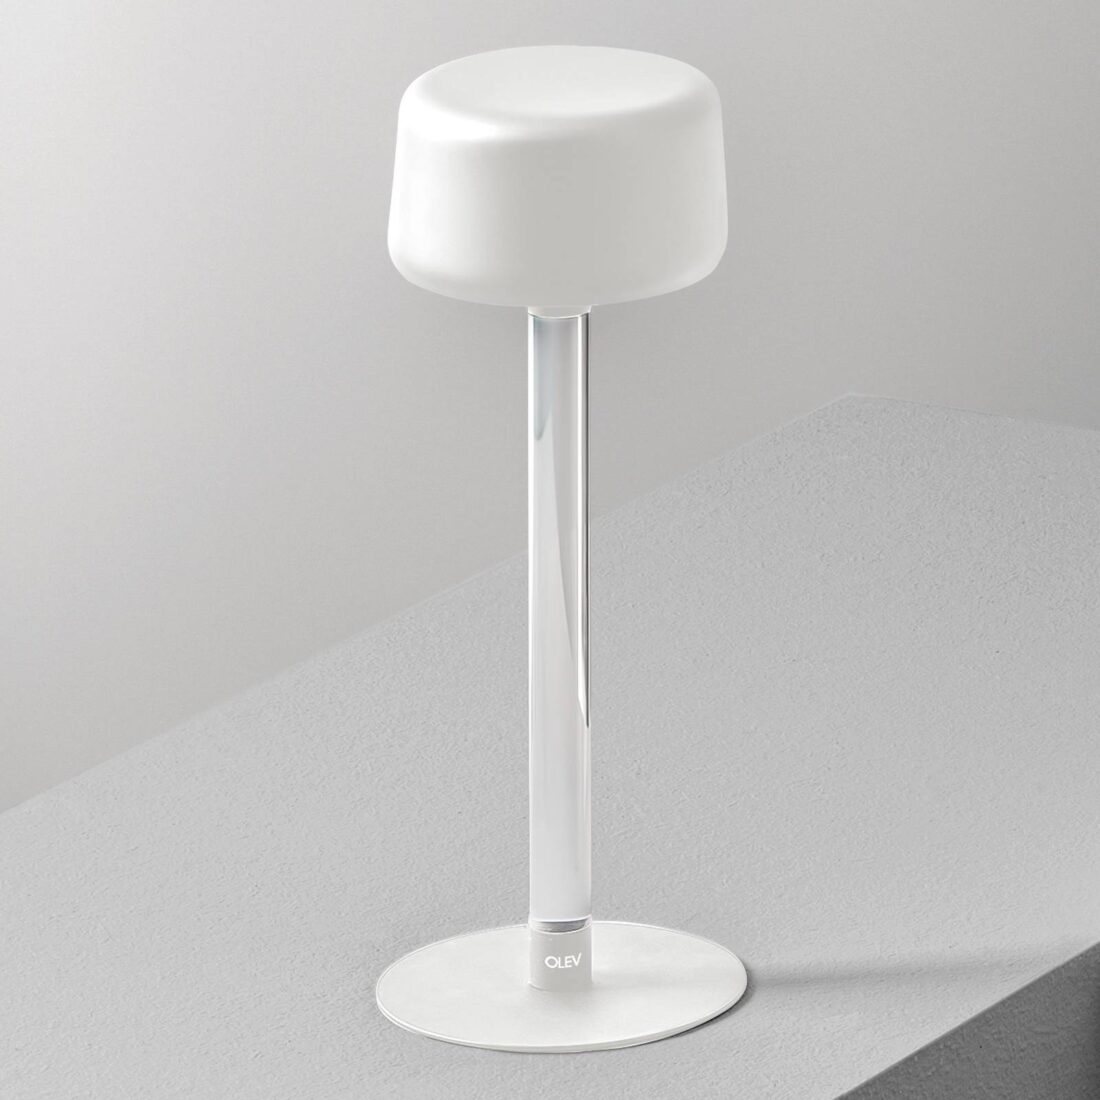 OleV Designová stolní lampa OLEV Tee s dobíjecí baterií